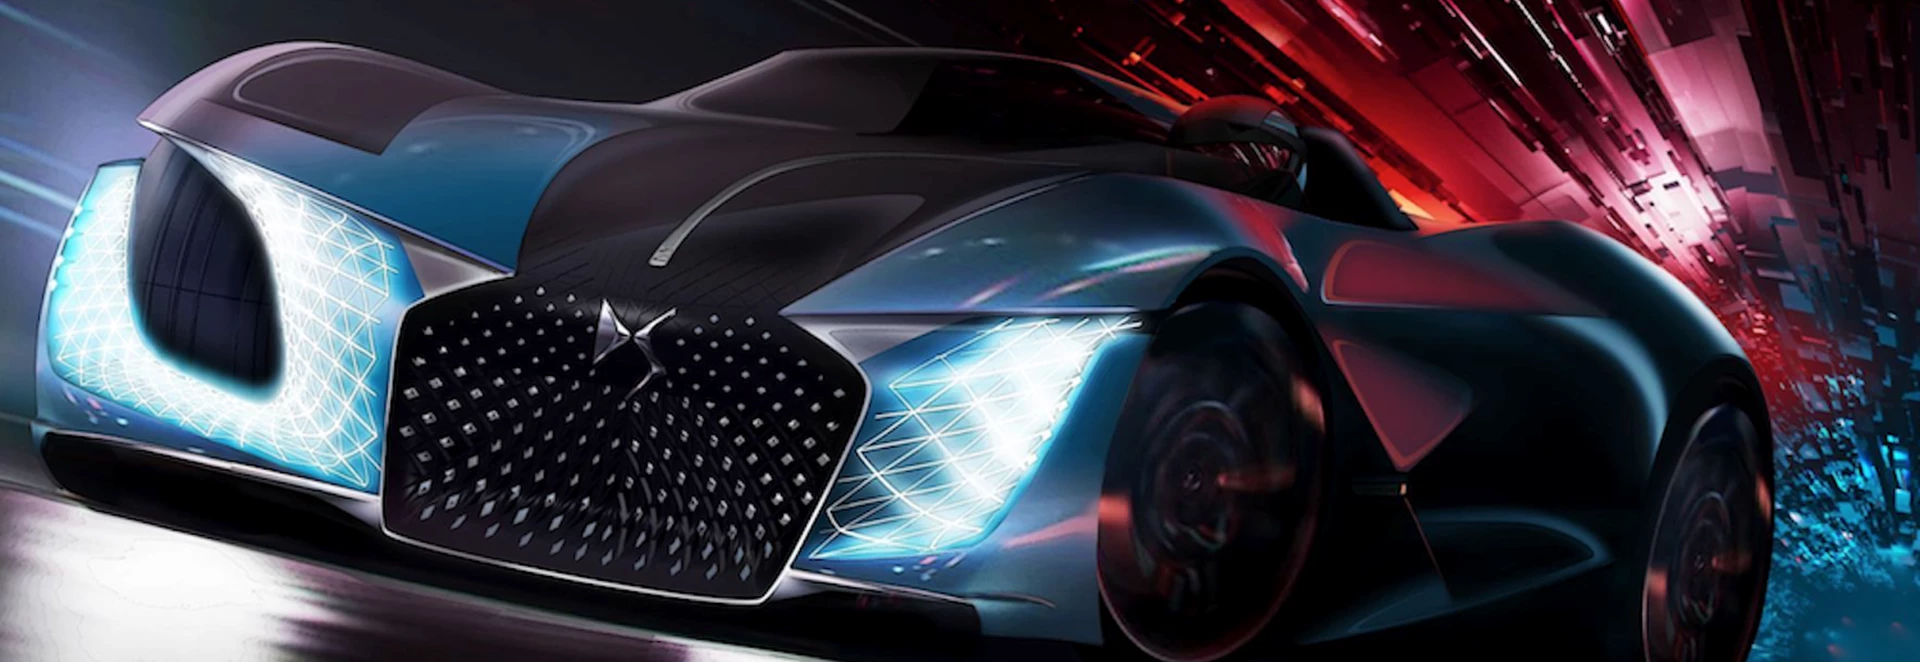 DS design concept reveals ‘car of your dreams’